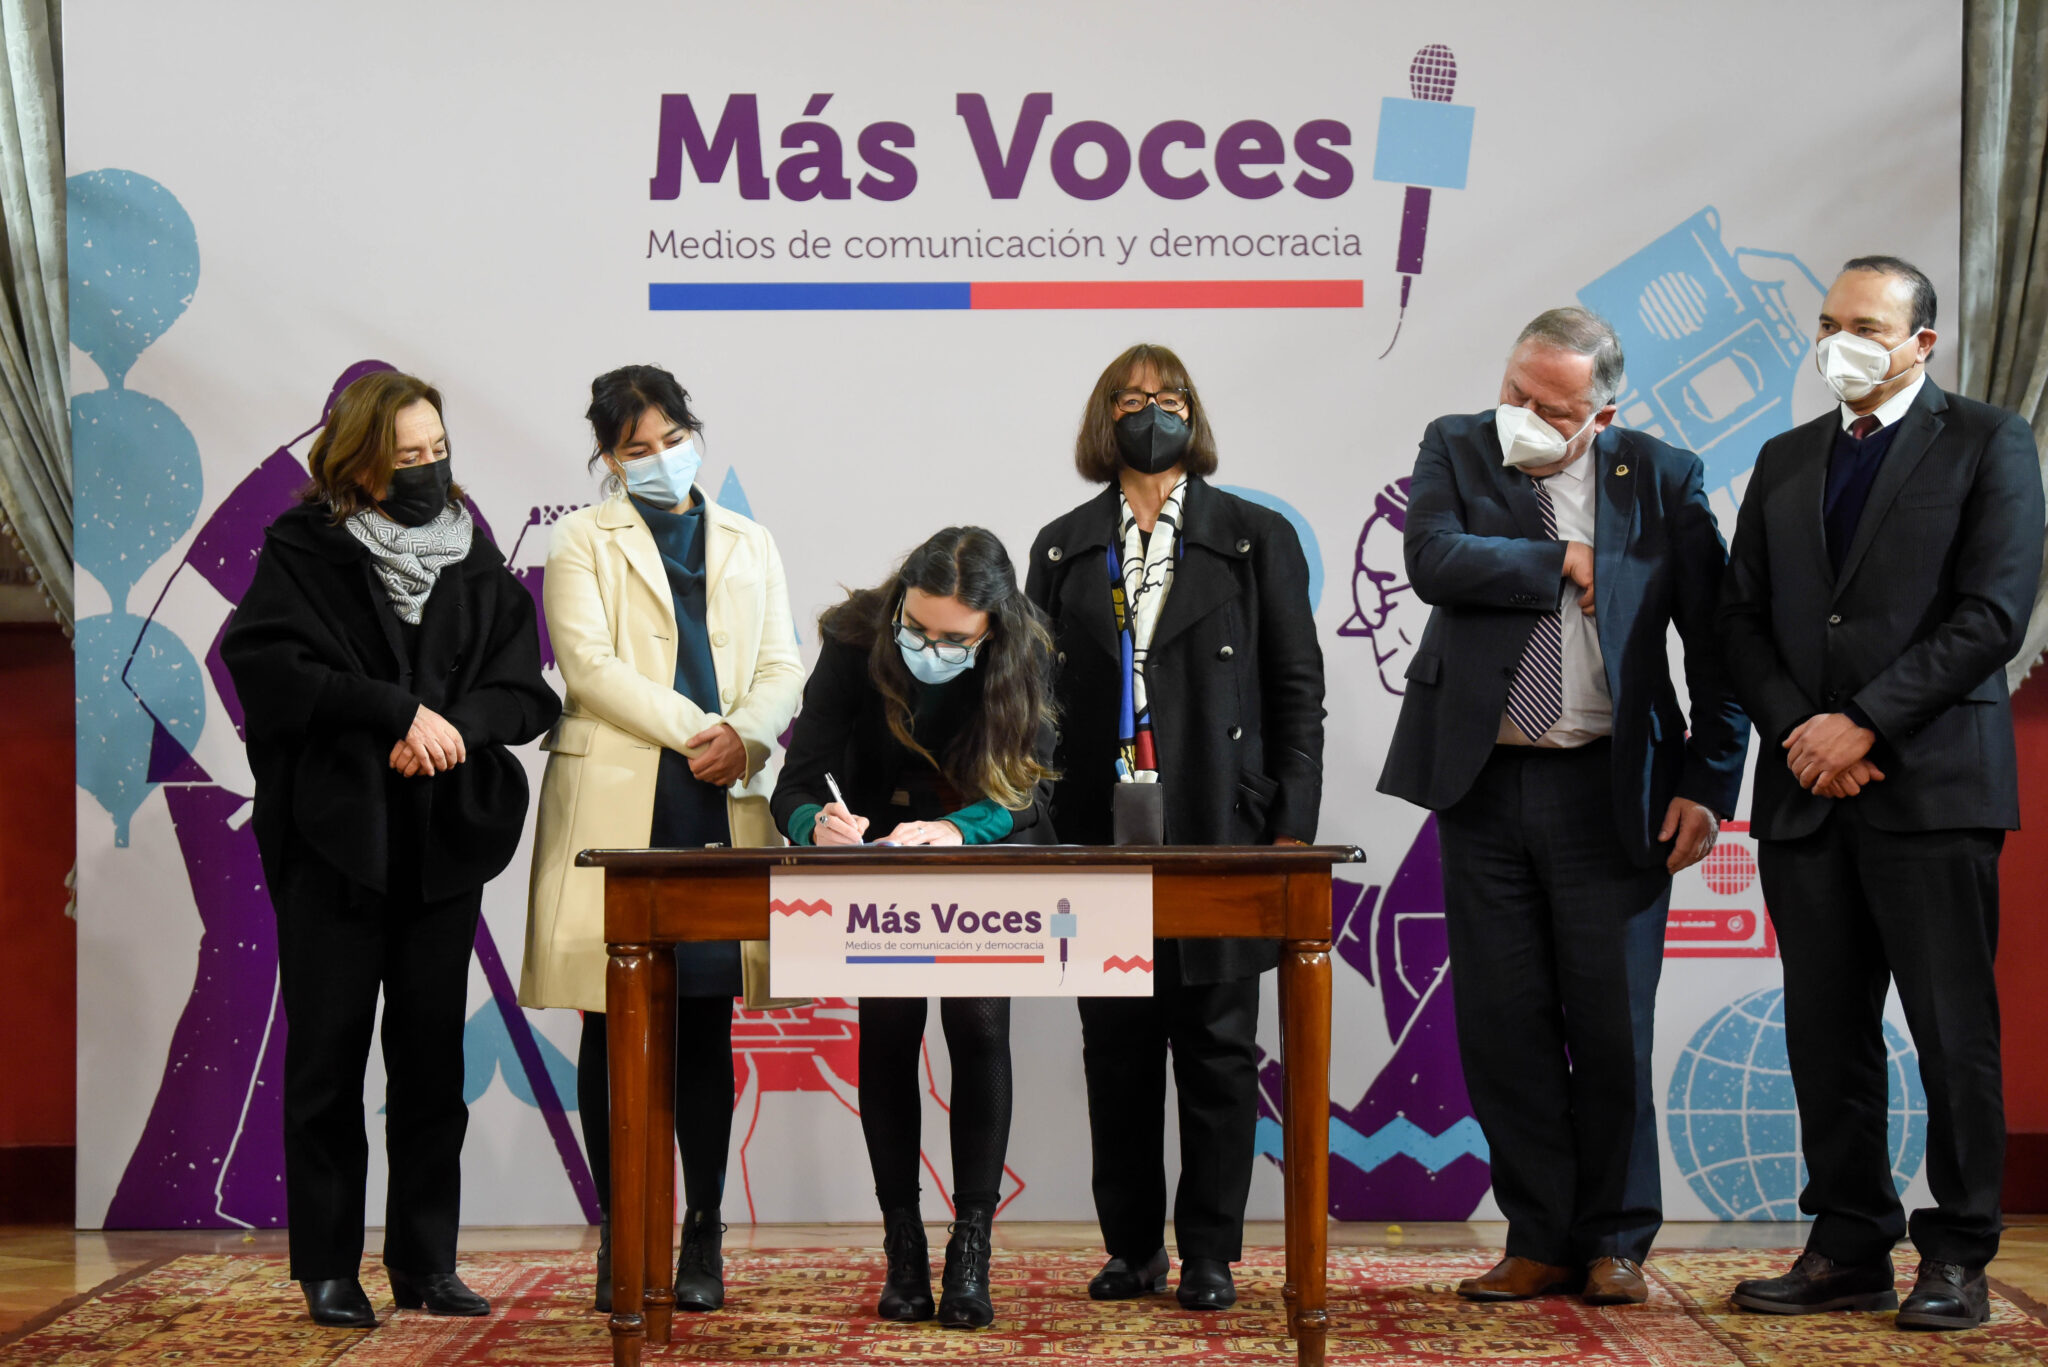 Ministra Camila Vallejo firma acuerdo: “Más Voces: medios de comunicación y democracia”